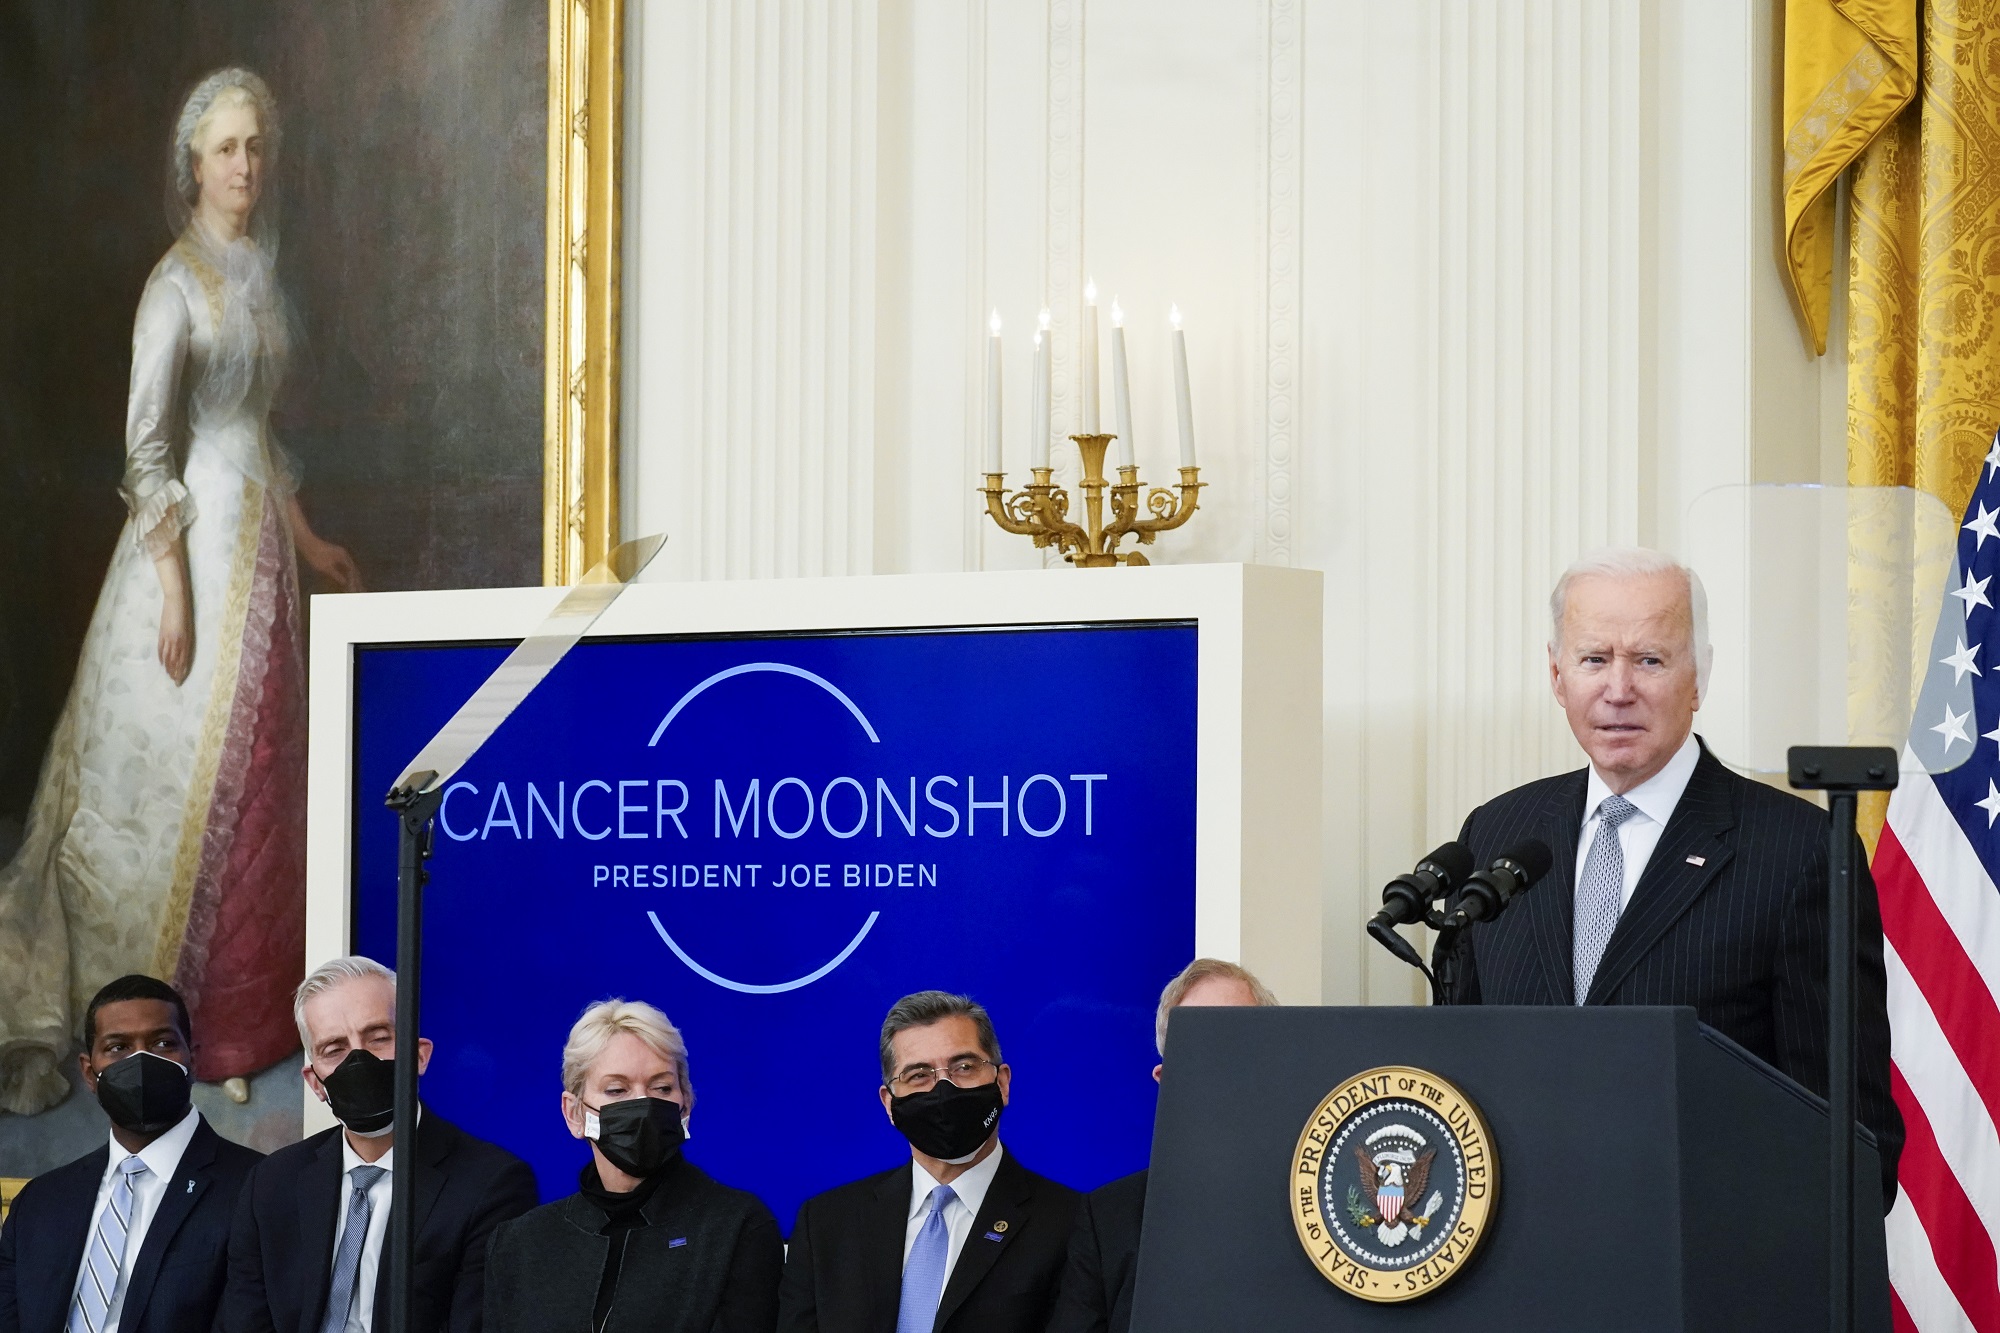 ΗΠΑ: Επανεκκίνηση του προγράμματος “Cancer Moonshot” από τον Τζο Μπάιντεν